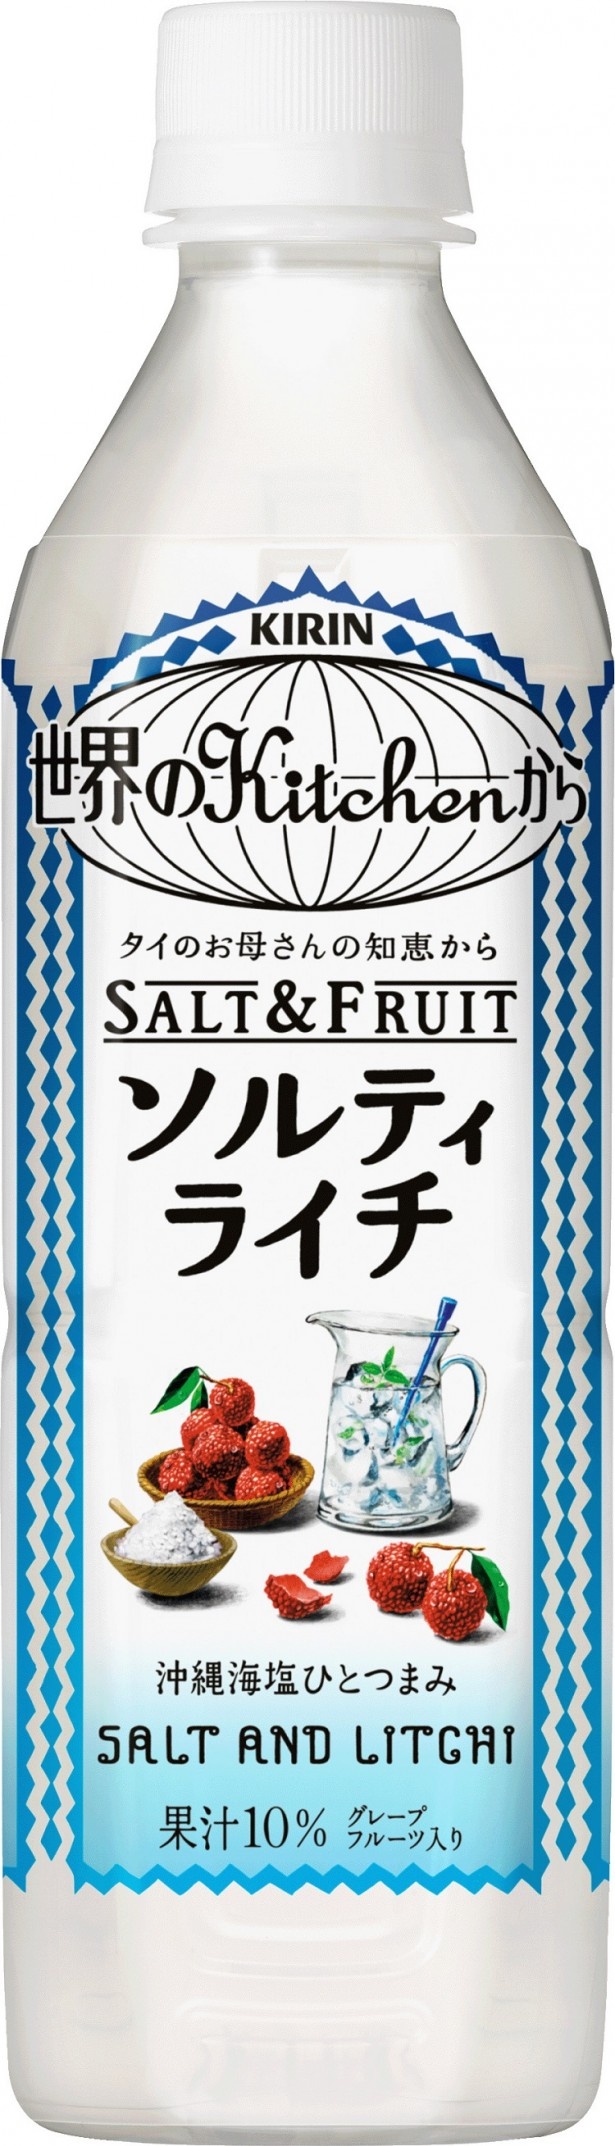 旬のライチに沖縄海塩をまぶして甘みを引き出した｢キリン 世界のKitchenから ソルティライチ｣(希望小売価格・税抜143円)。タイのお母さんの知恵がヒント